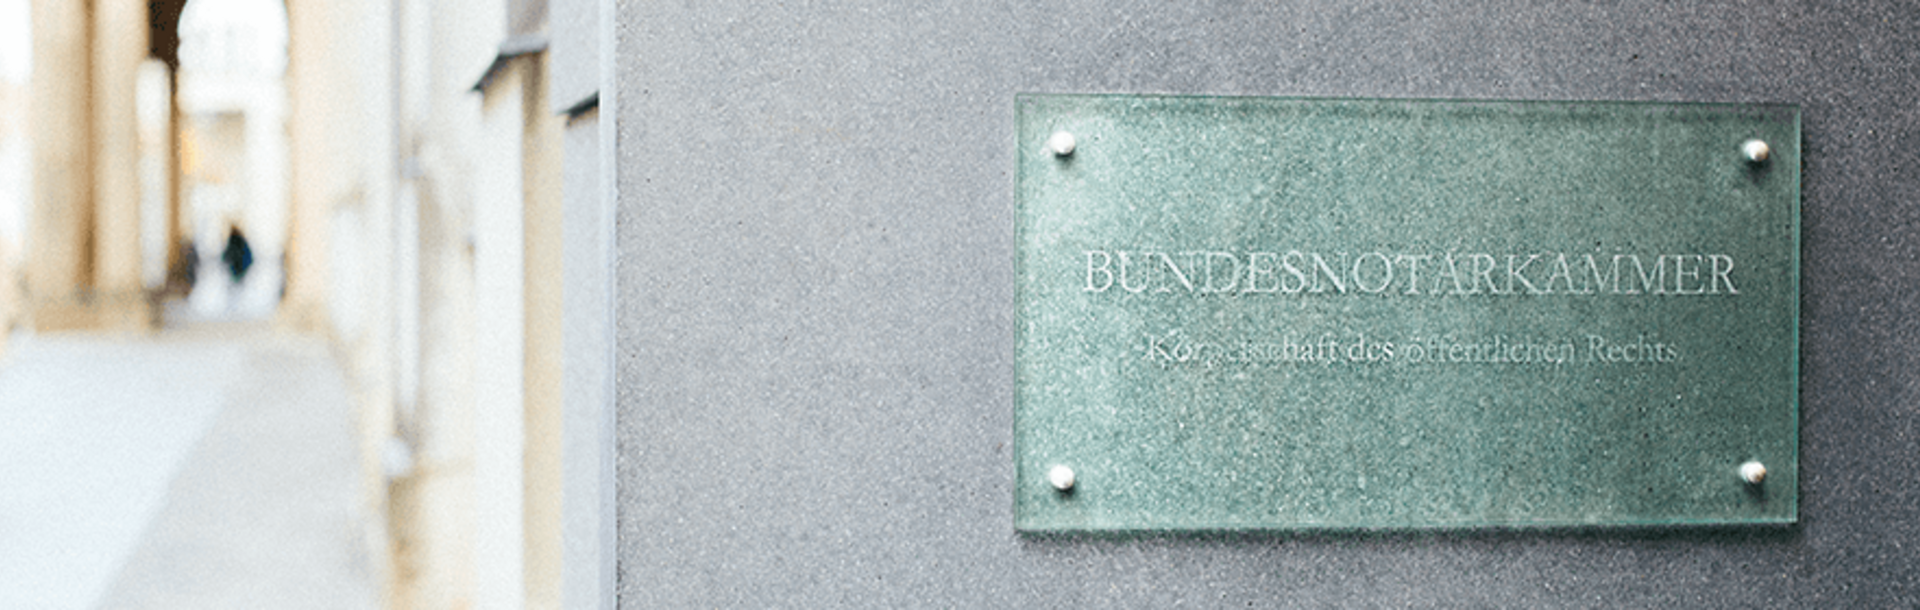 Image: Plate "Bundesnotarkammmer" at entrance of building